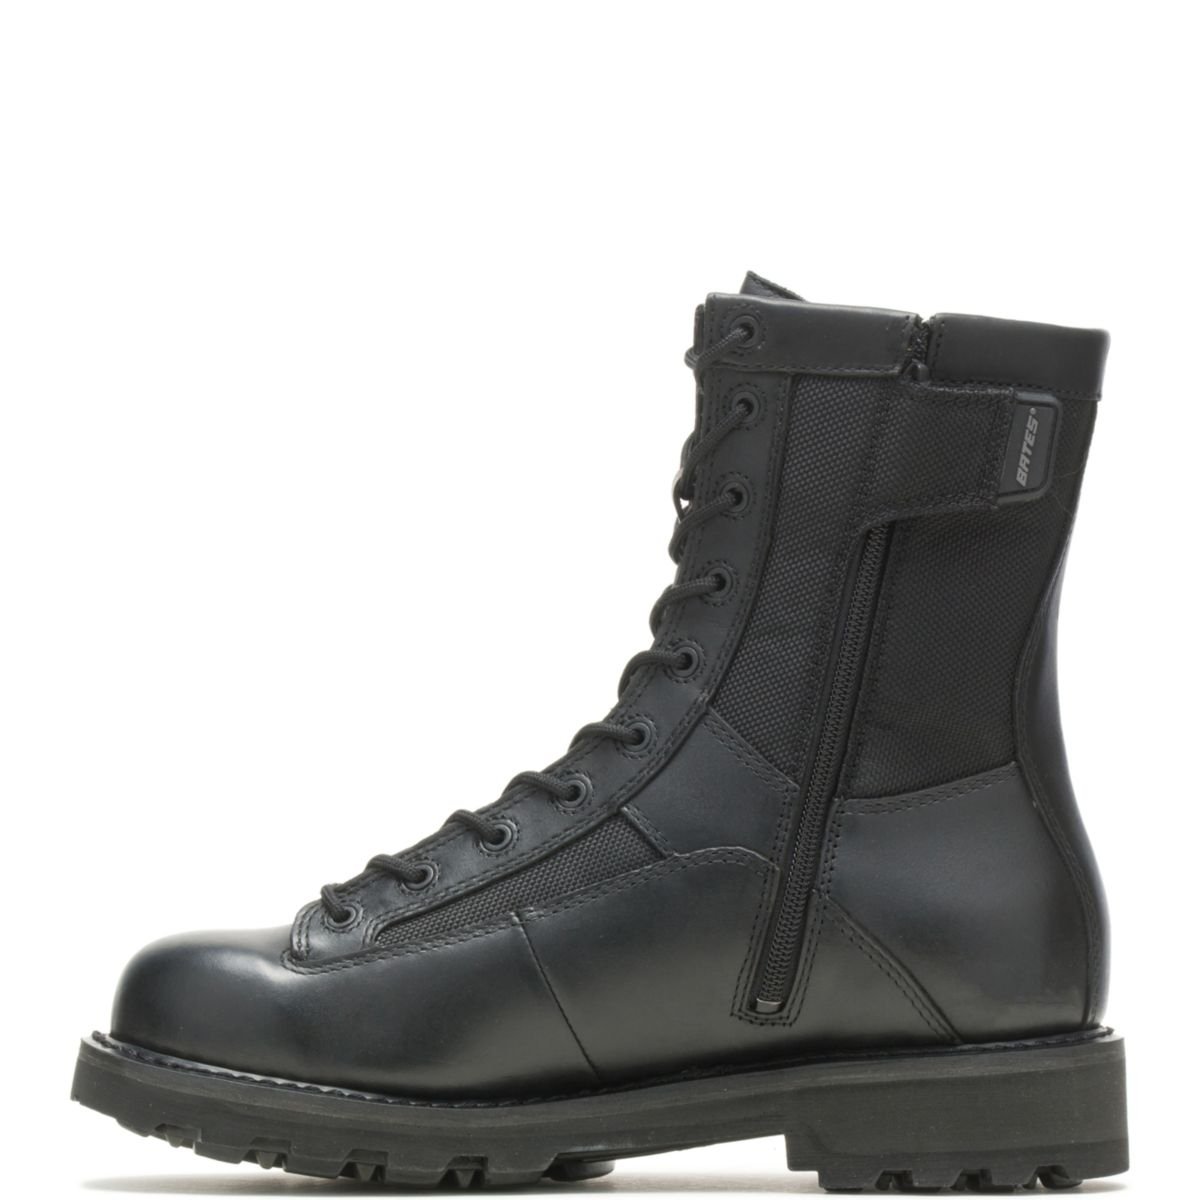 Bates Men's 8 DuraShocksÂ® Lace-to-Toe Side Zip Boot Black - E03140 BLACK - BLACK, 7-M